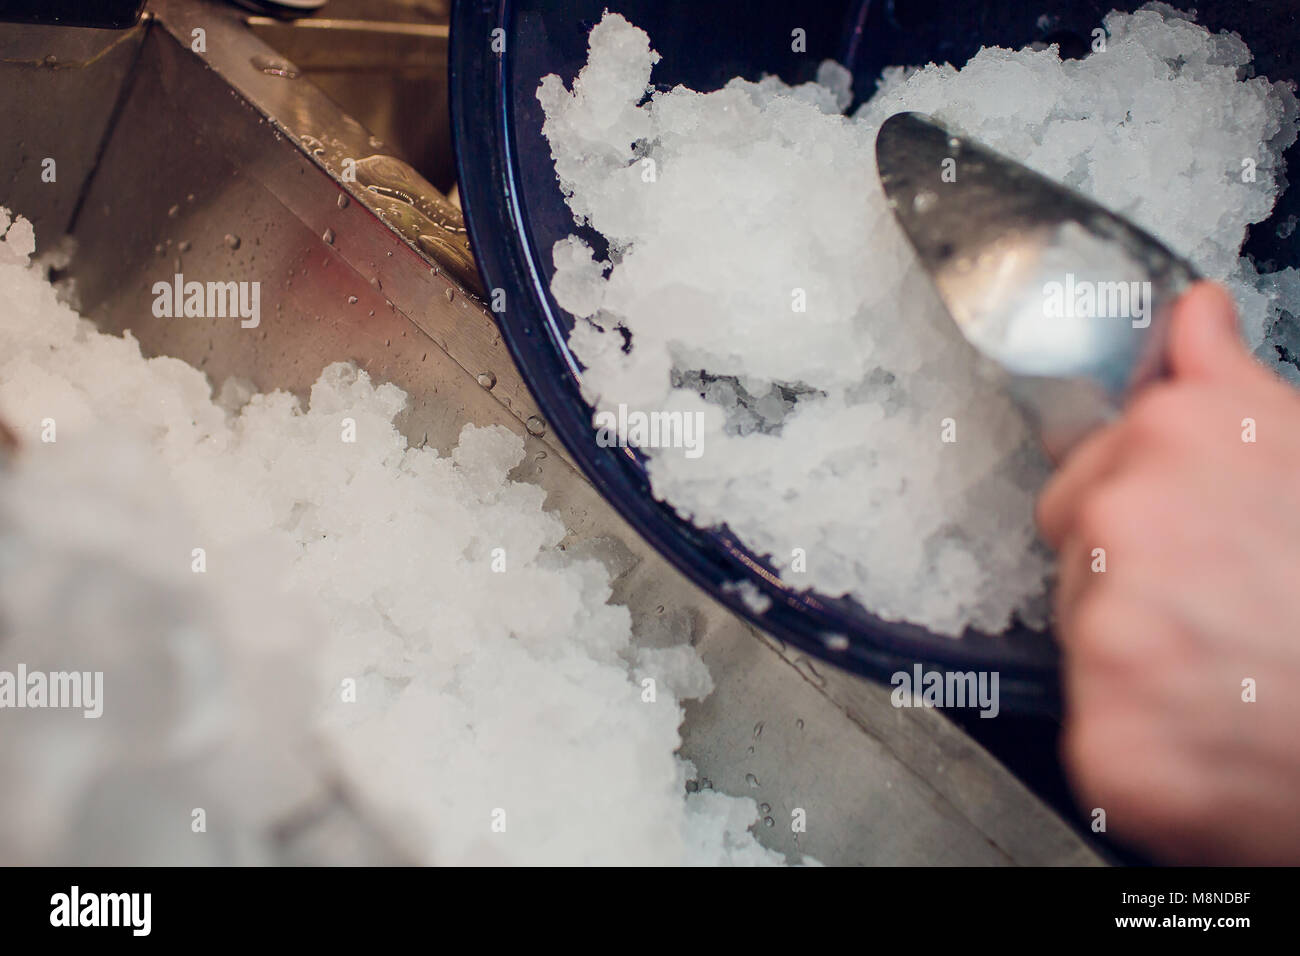 Boules de glace d'argent dans un grand seau rempli de glace Banque D'Images